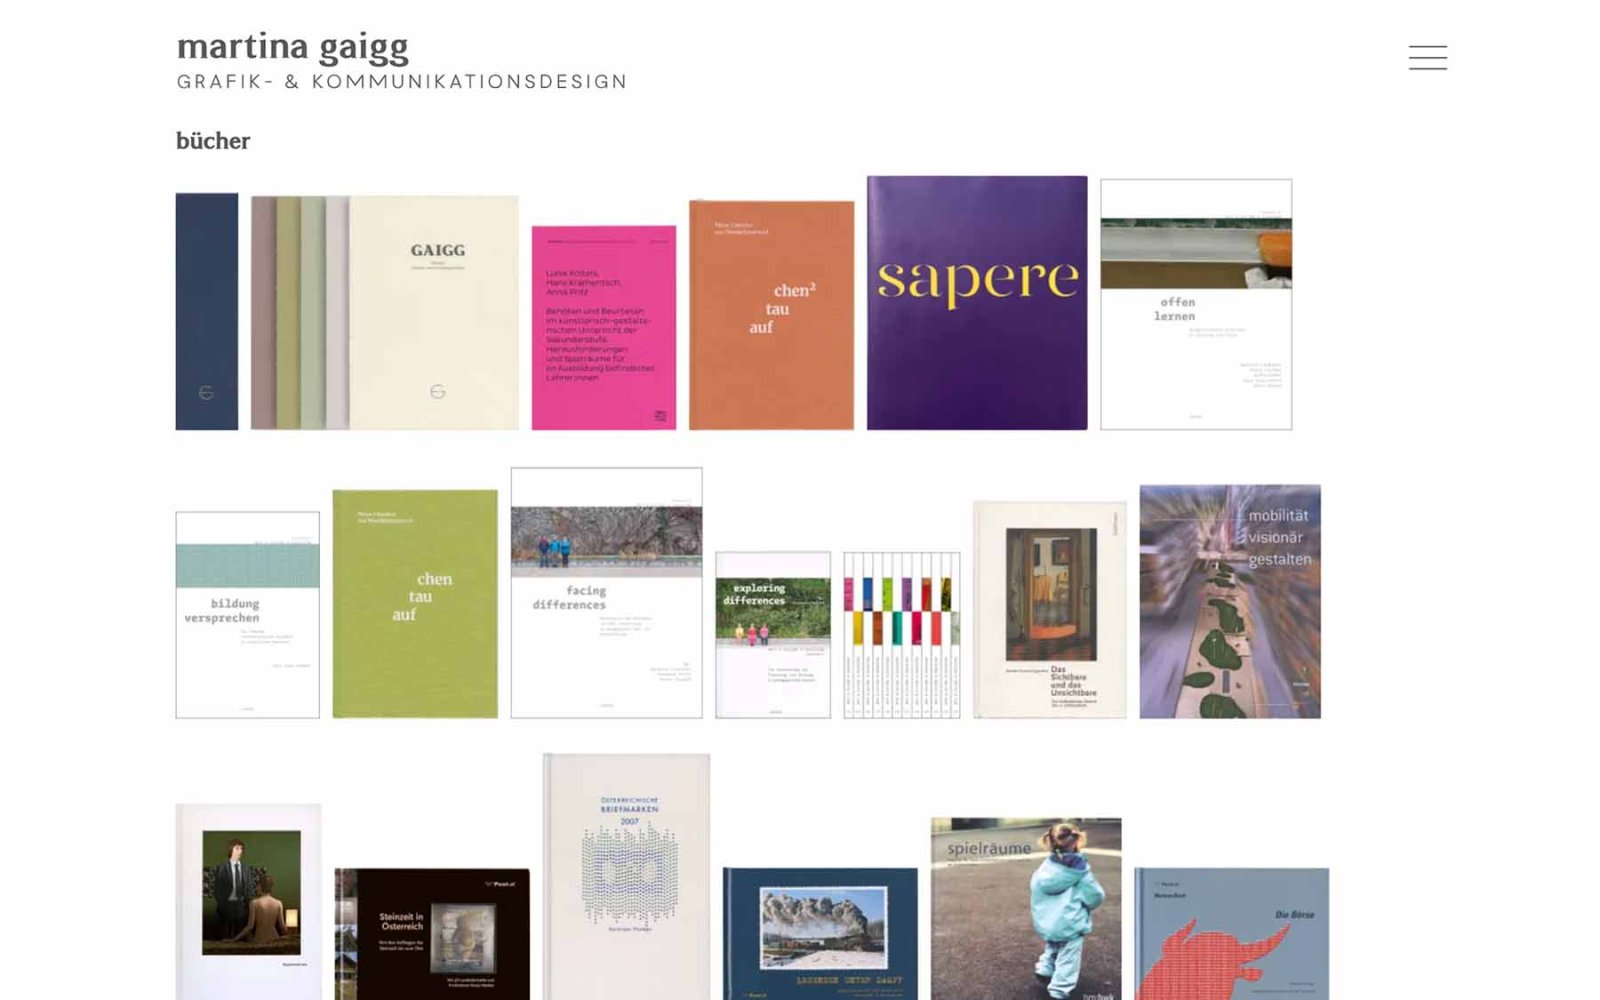 Website-Unterseite Martina Gaigg mit Projektübersicht